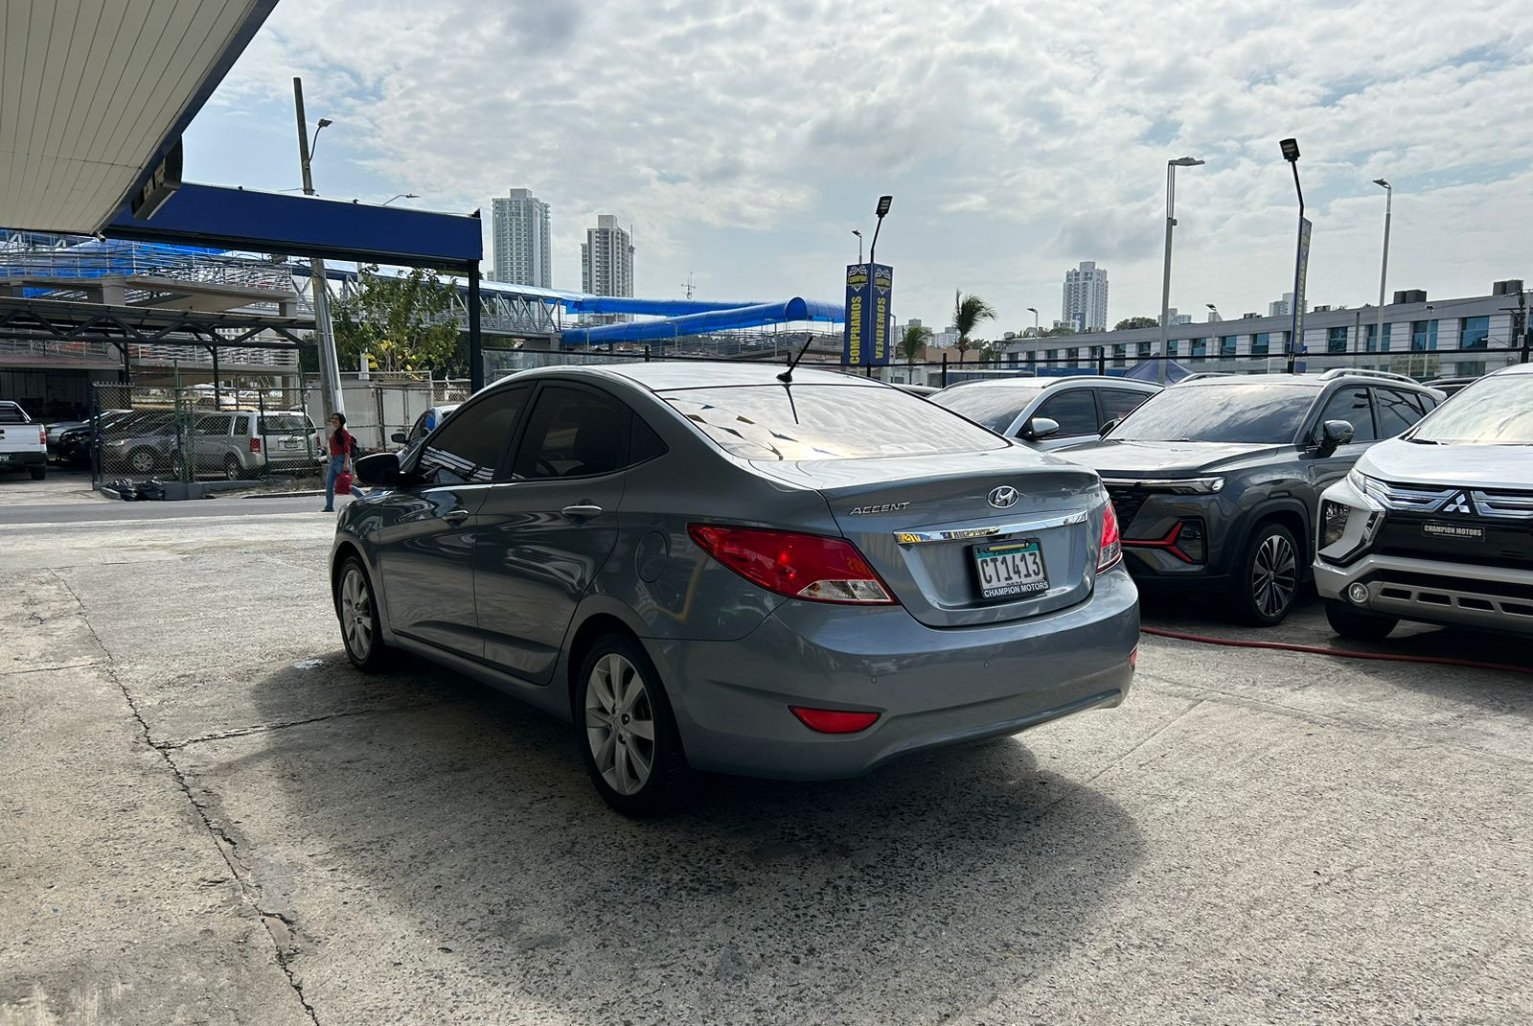 Hyundai Accent 2019 Automático color Plateado, Imagen #6